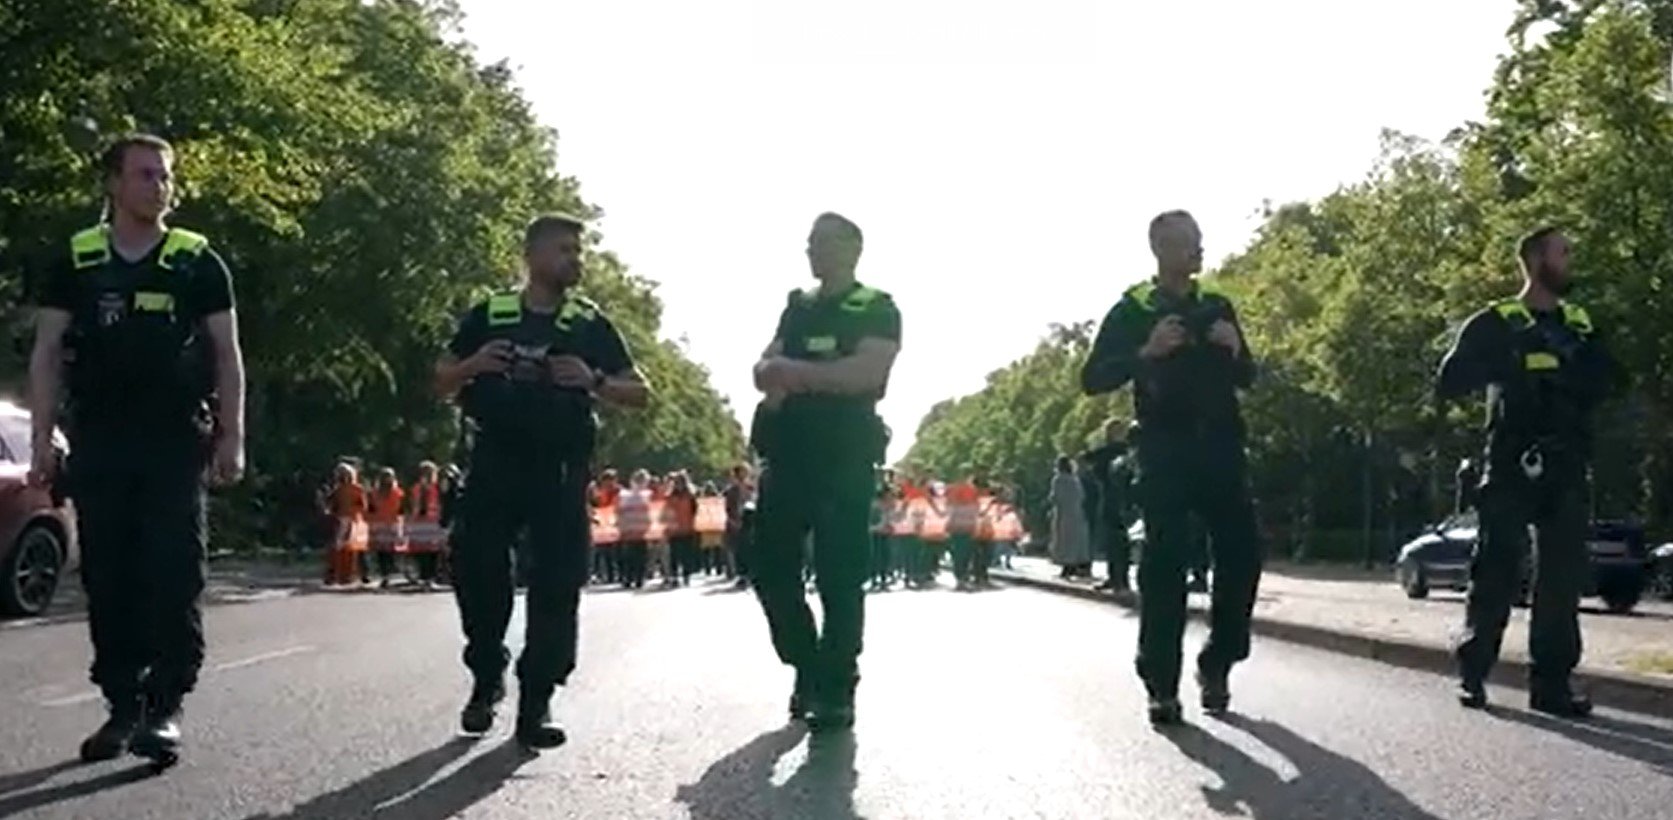  Vastă operaţiune a poliţiei germane împotriva mişcării ecologiste Ultima Generaţie, vizând şapte activişti